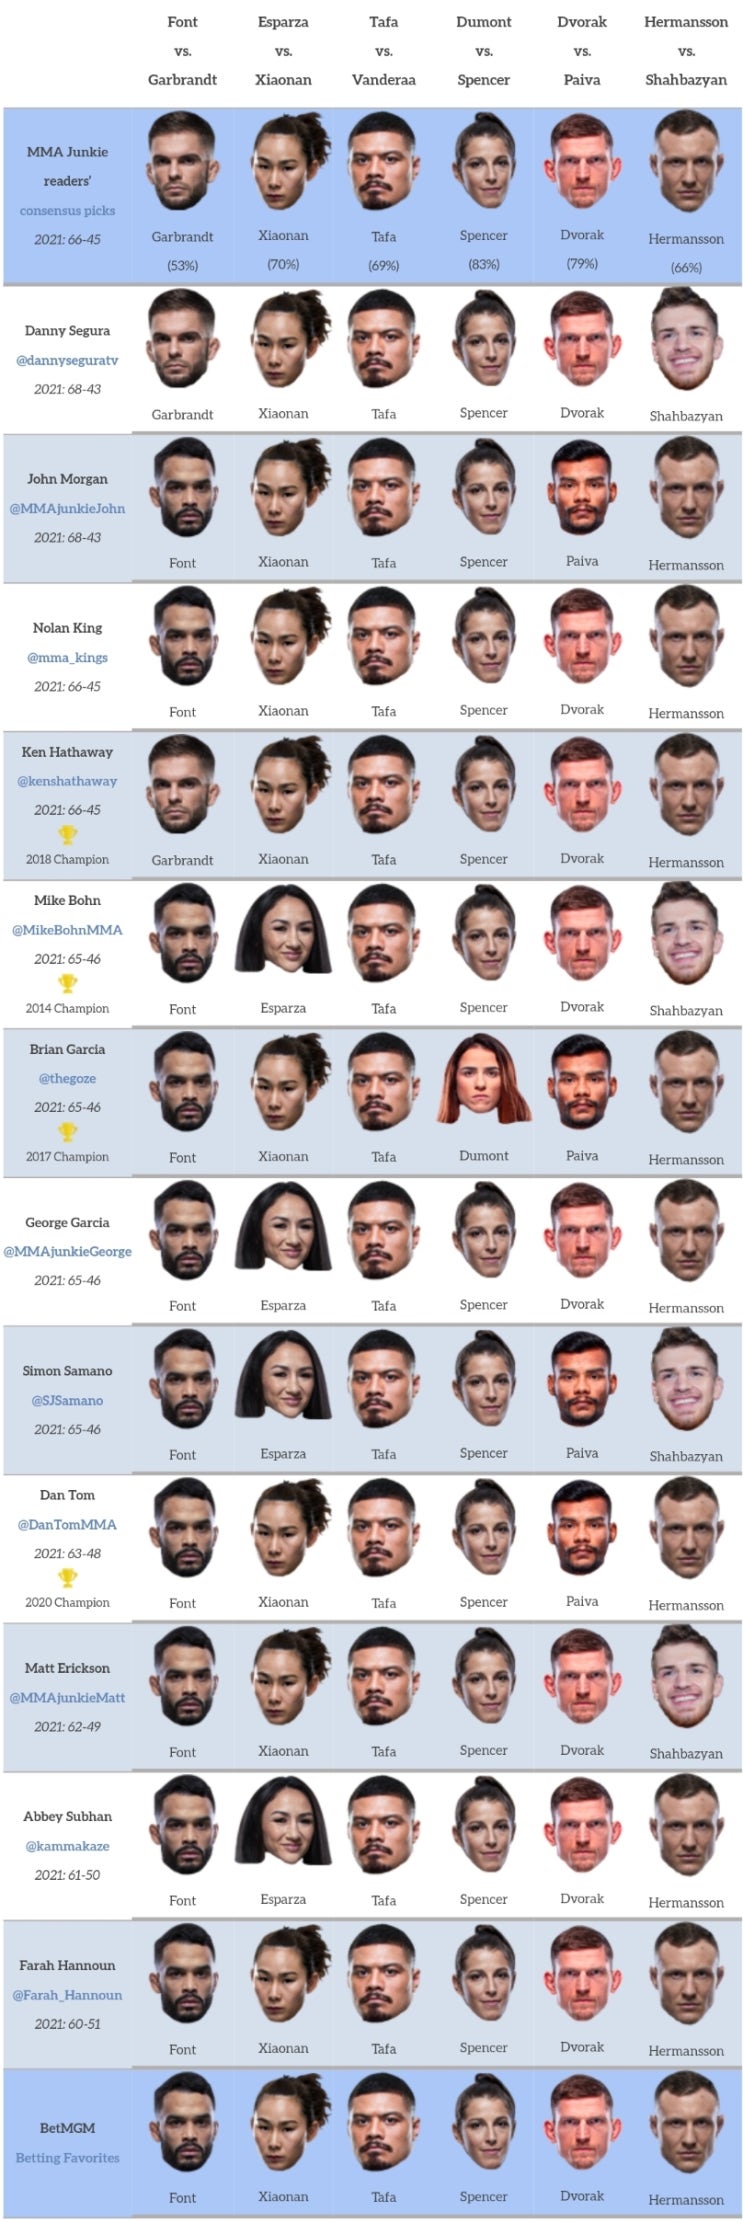 UFC 파이트나이트 188: 폰트 vs 가브란트 프리뷰(미디어 예상, 배당률)